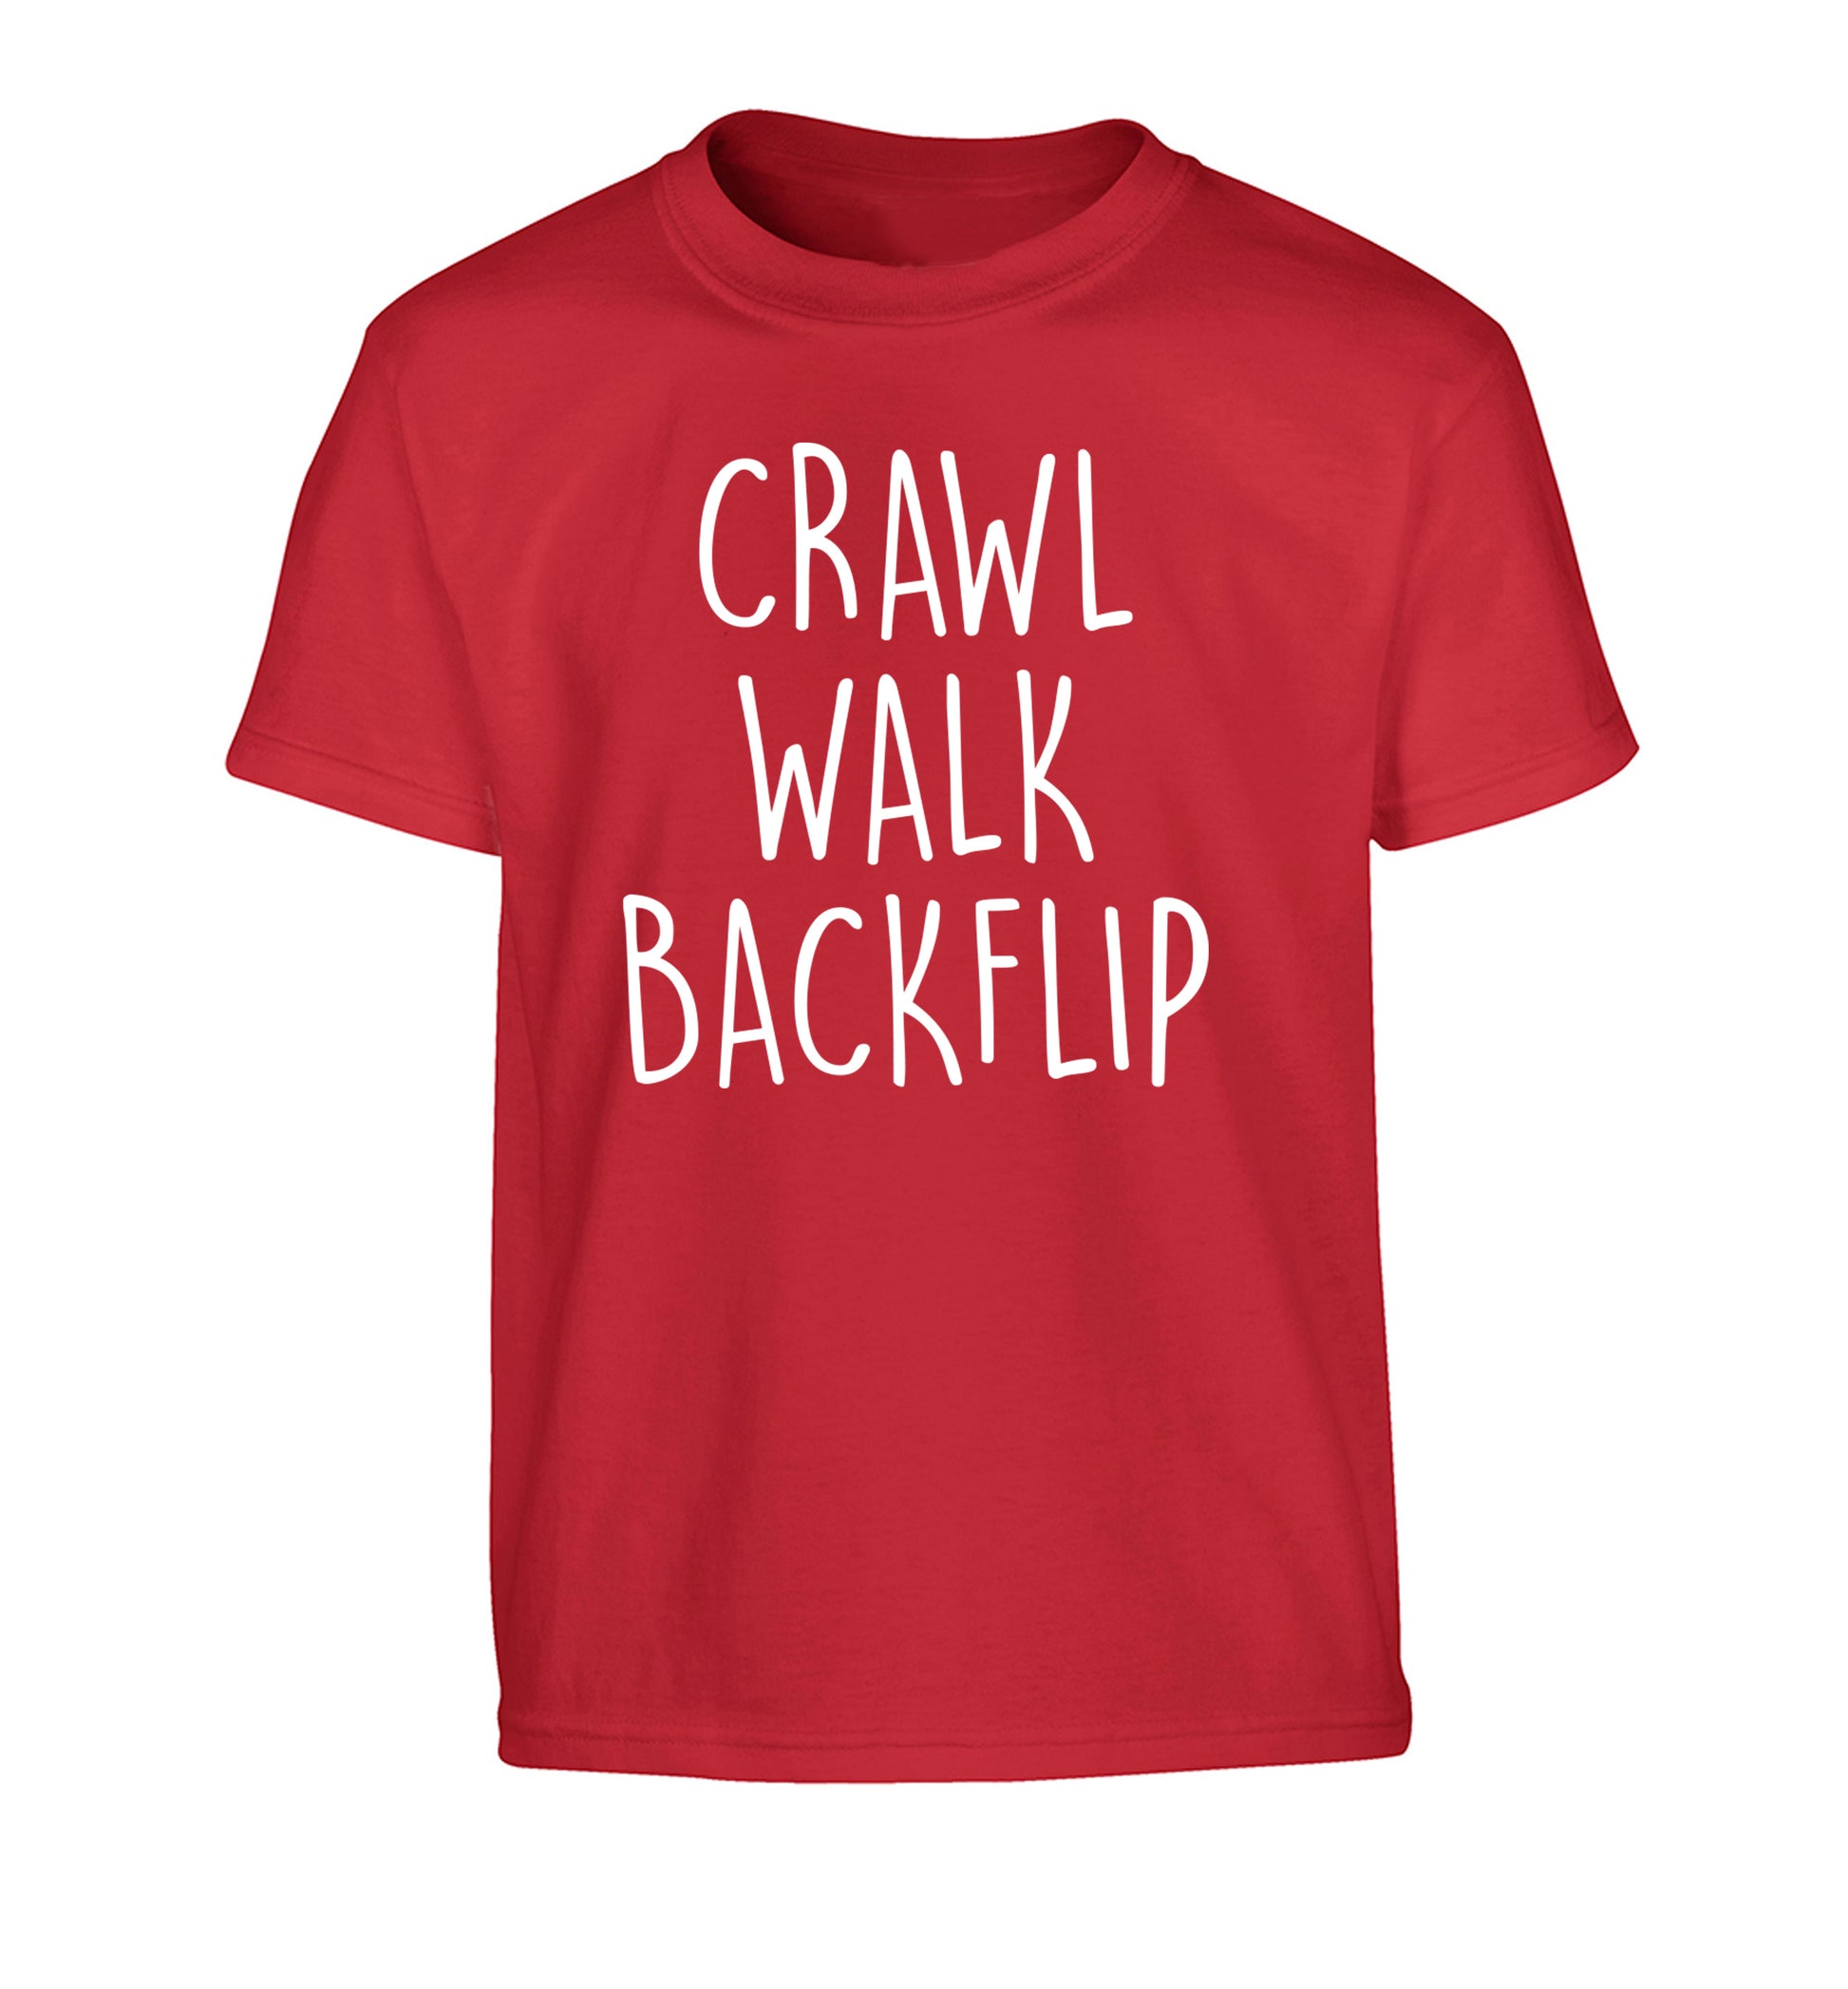 Crawl Walk Backflip Children's red Tshirt 12-13 Years